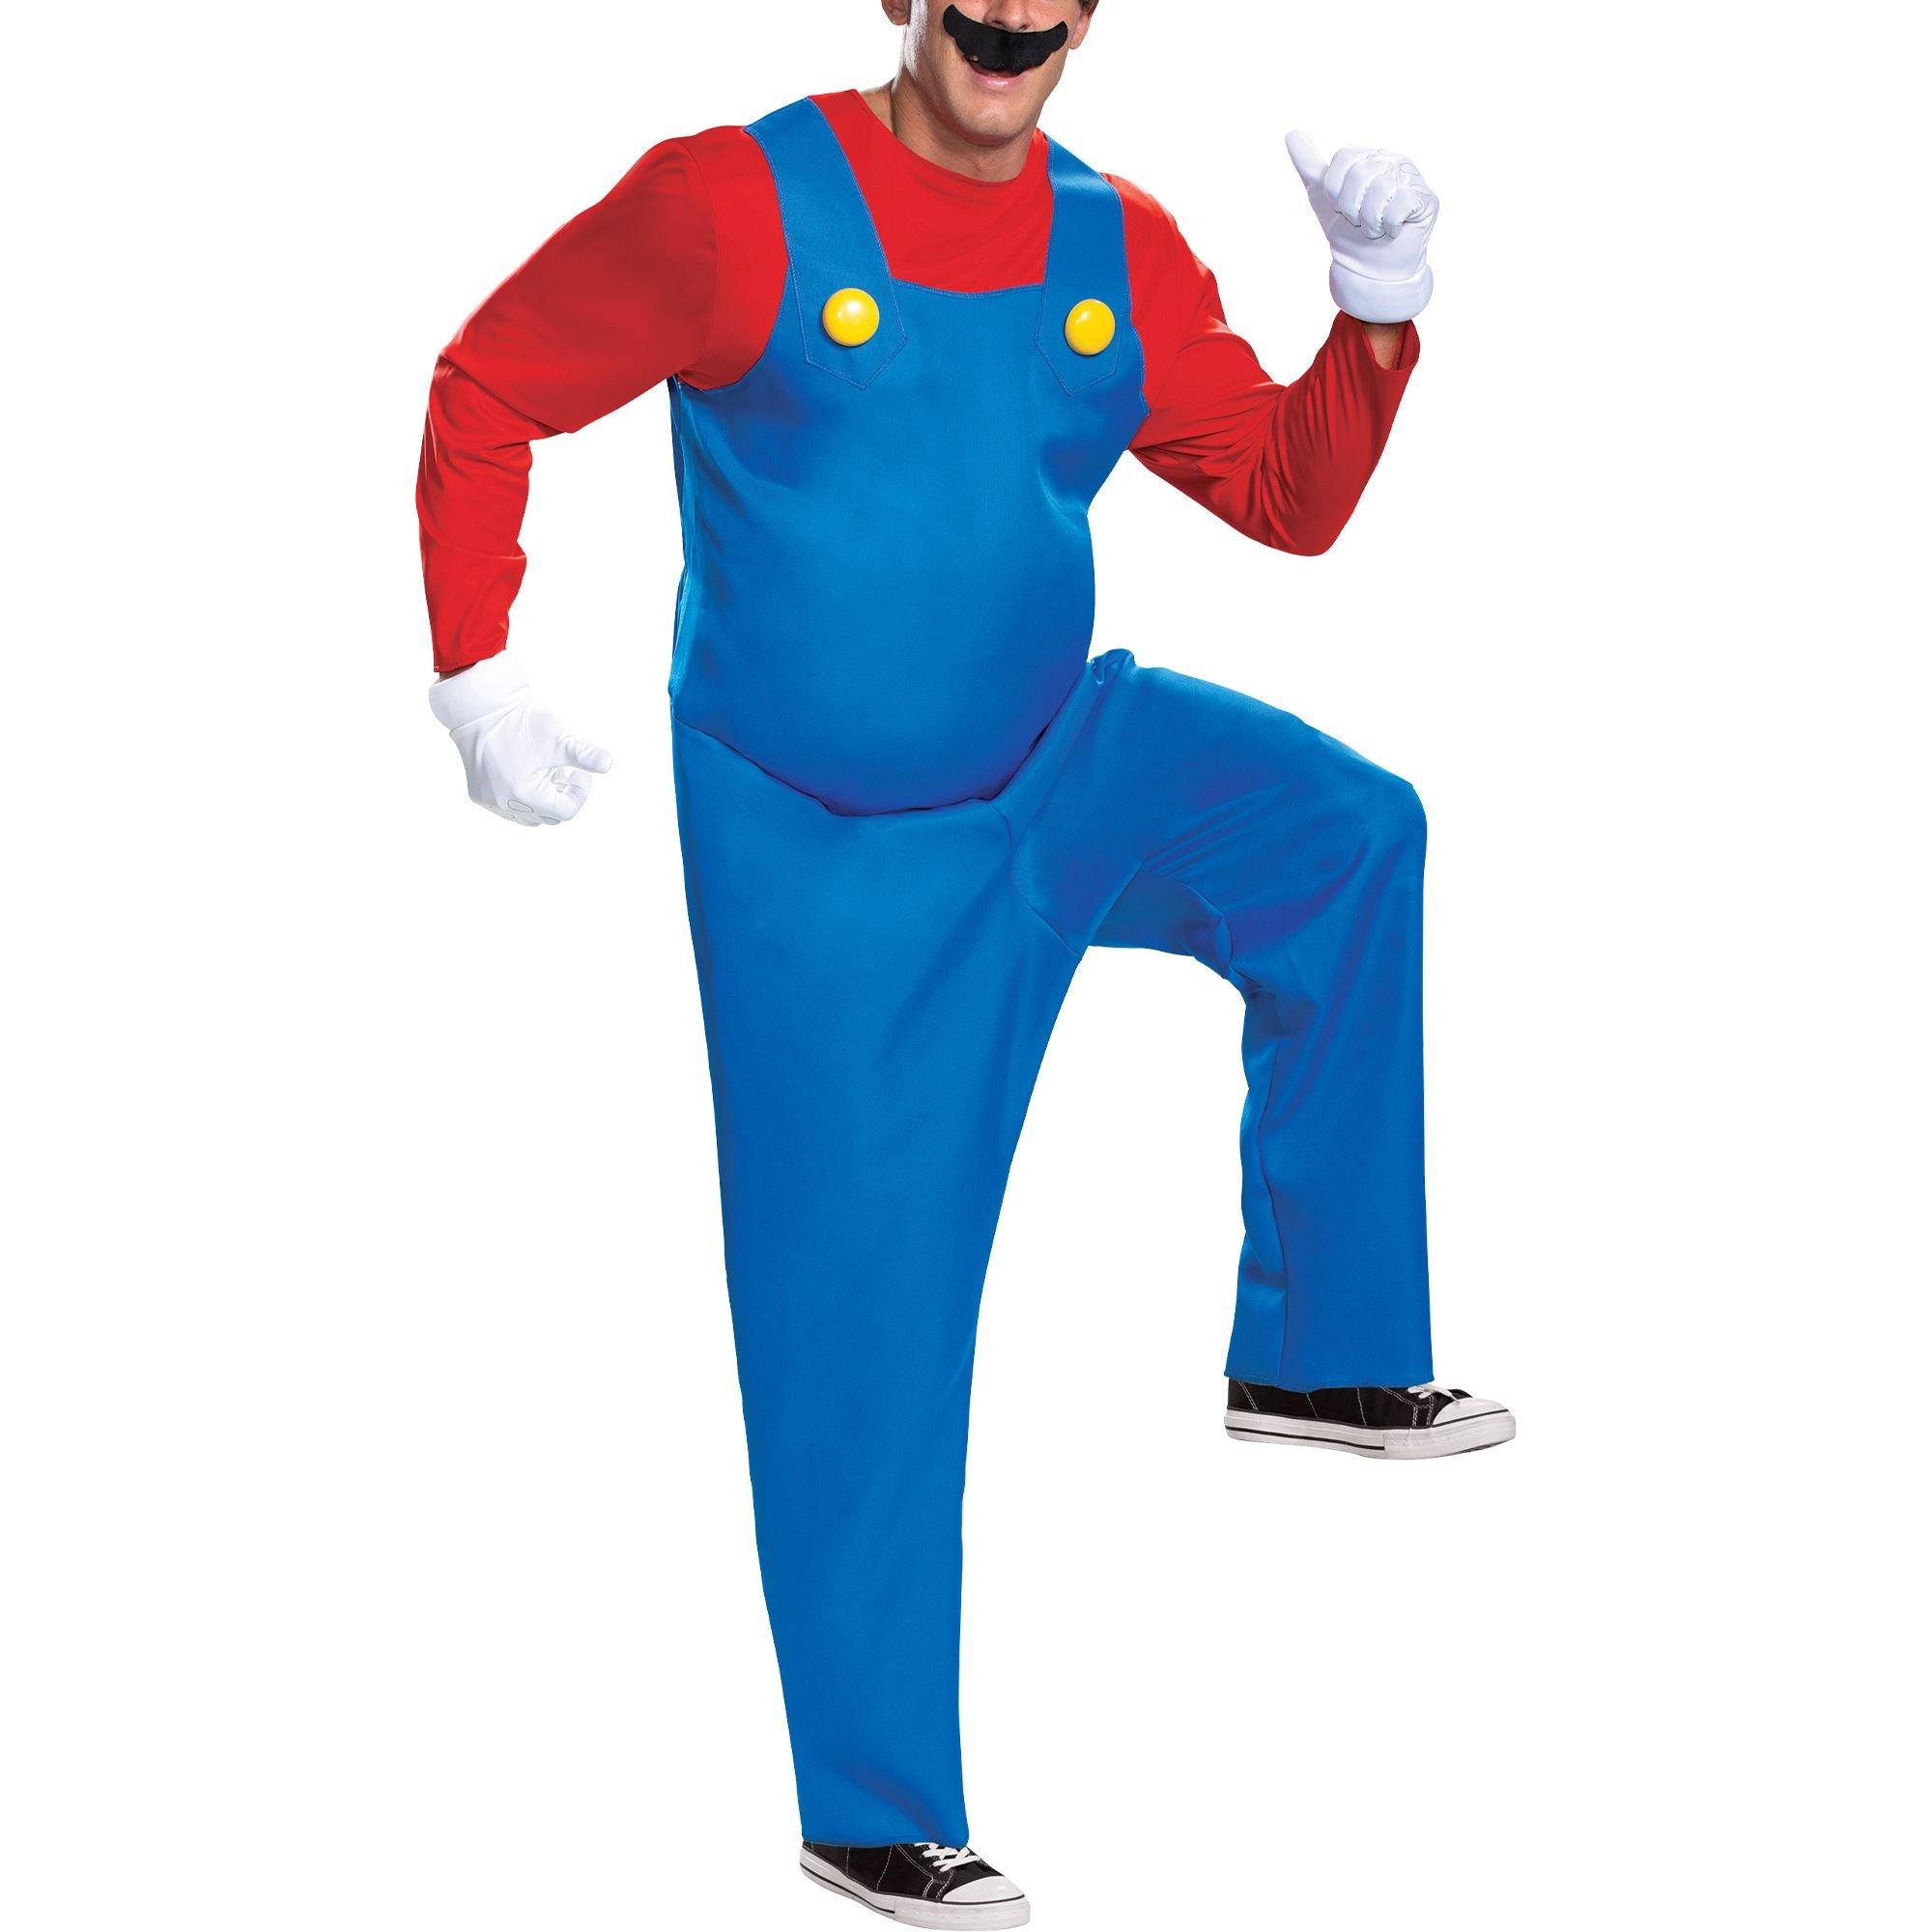 Film Adulte Super Mario Bros Luigi Cosplay Costume Carnaval